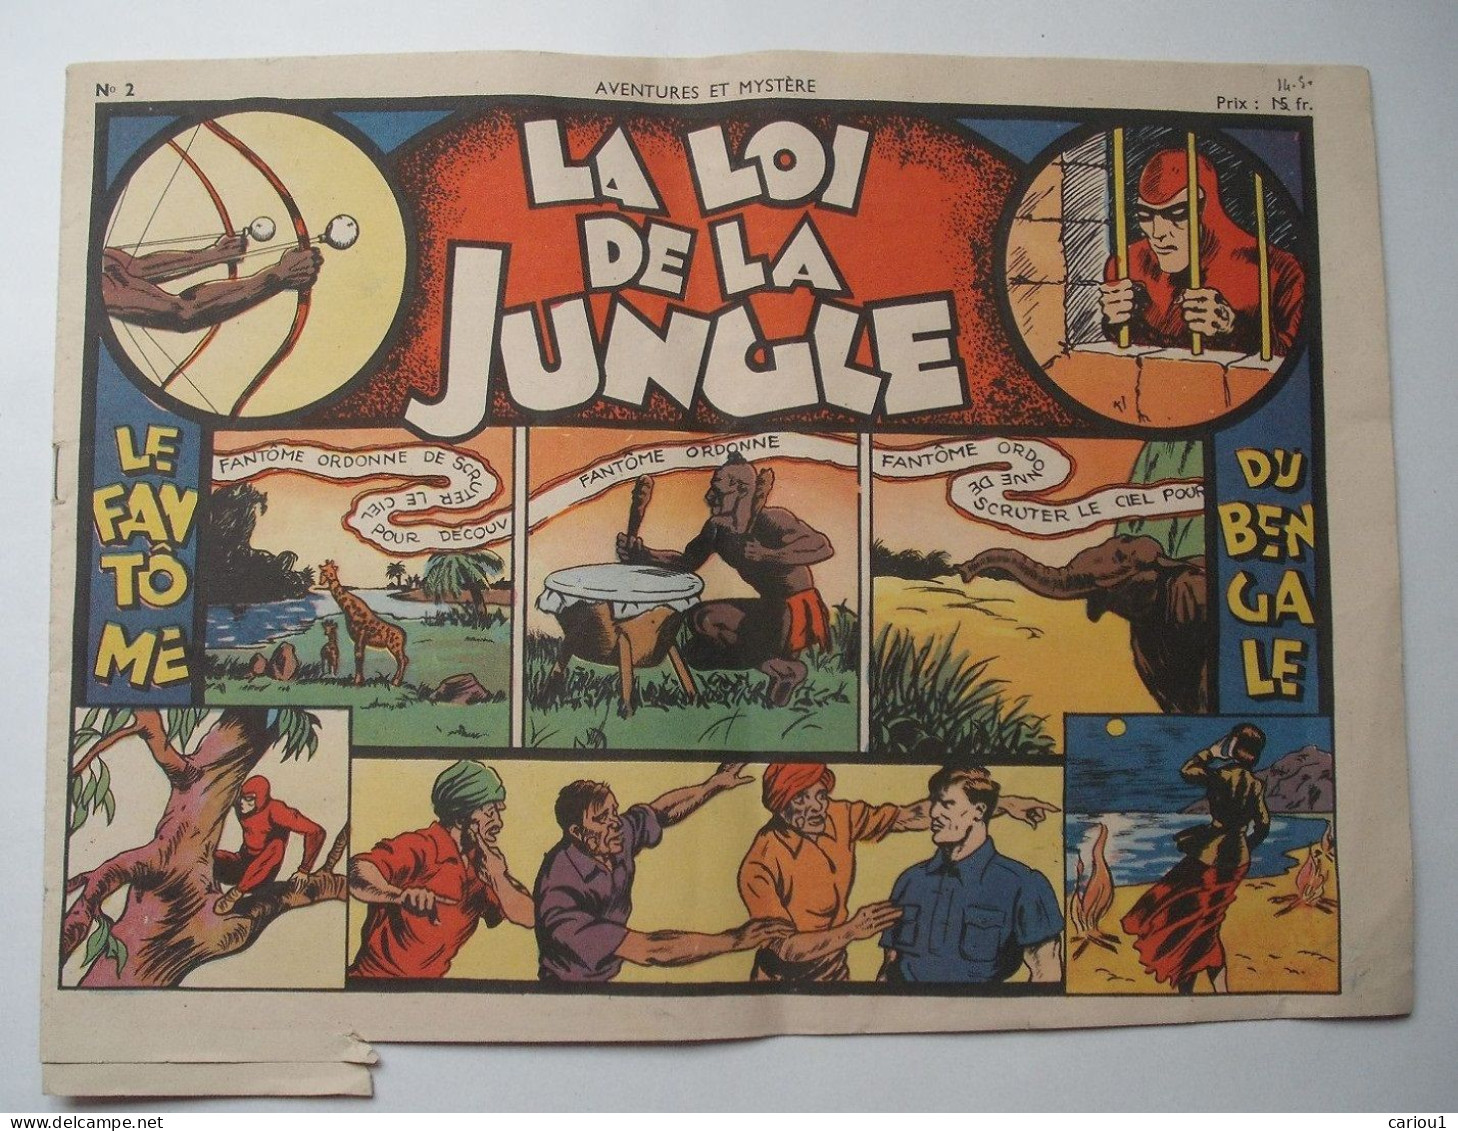 C1  LE FANTOME La LOI DE LA JUNGLE Aventures Et Mystere # 2 1947 SAGE The Phantom PORT INCLUS France - Editions Originales (langue Française)